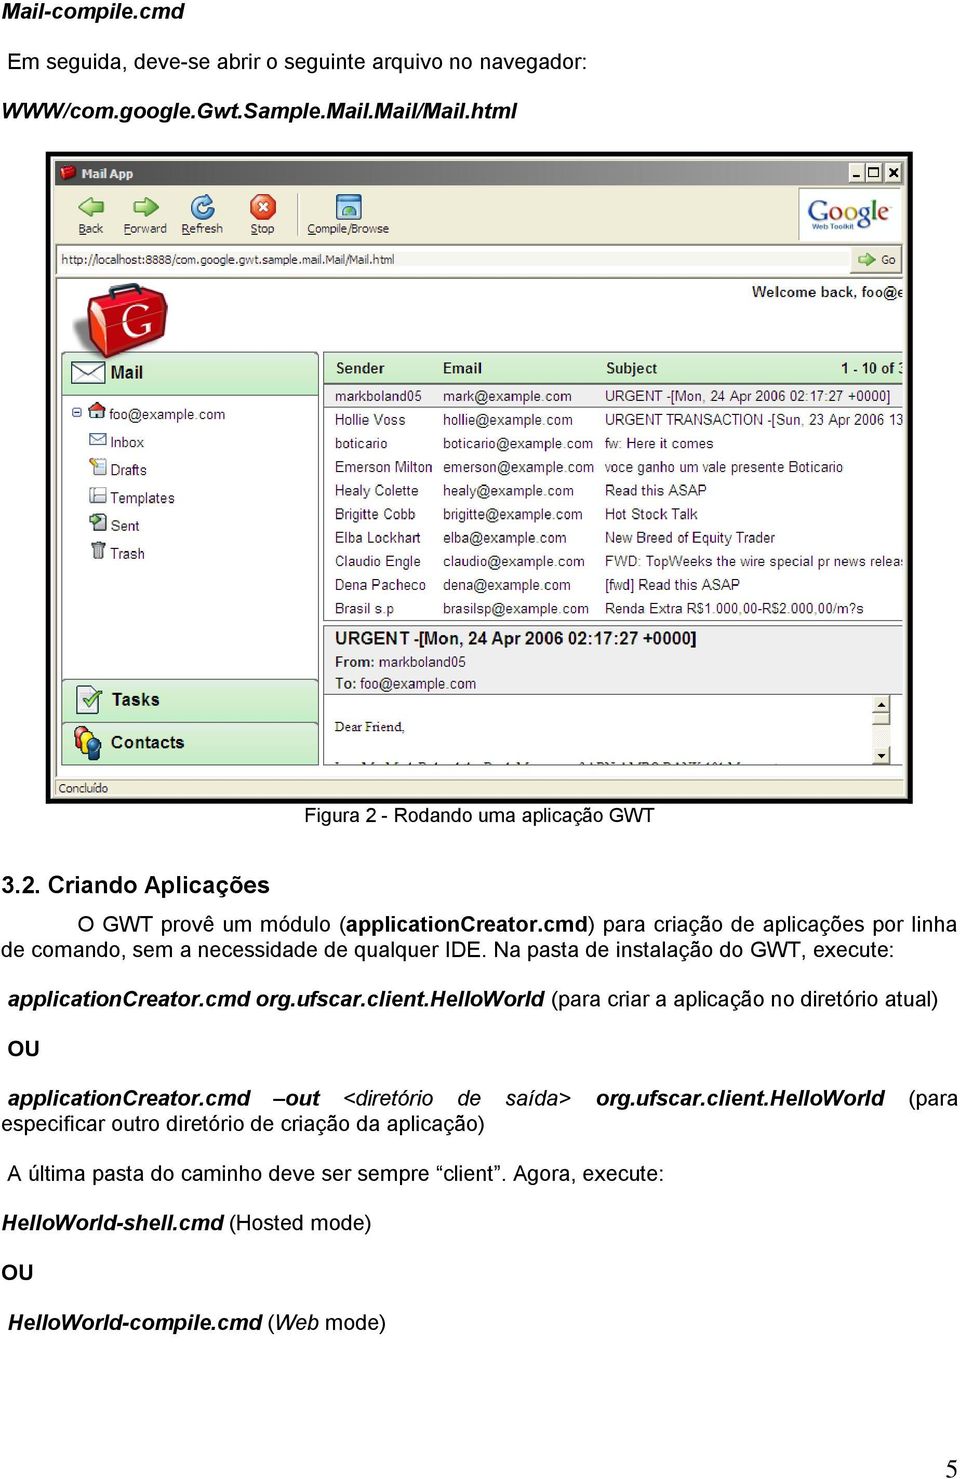 Na pasta de instalação do GWT, execute: applicationcreator.cmd org.ufscar.client.helloworld (para criar a aplicação no diretório atual) OU applicationcreator.